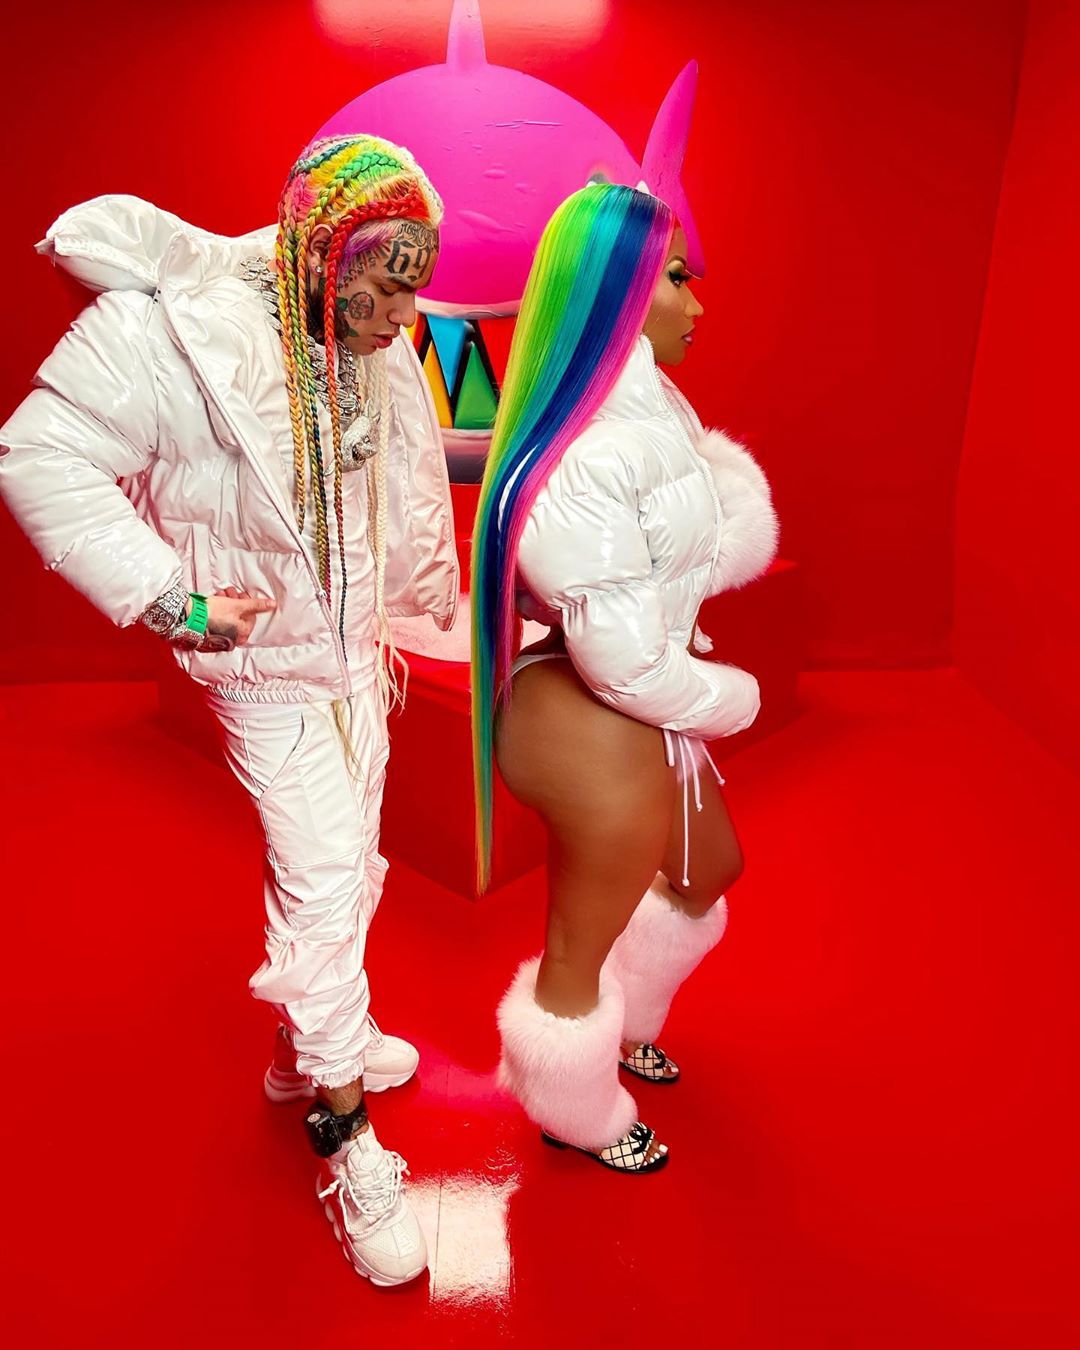 Minaj - 6ix9ine & Nicki Minaj make another history with TROLLZ